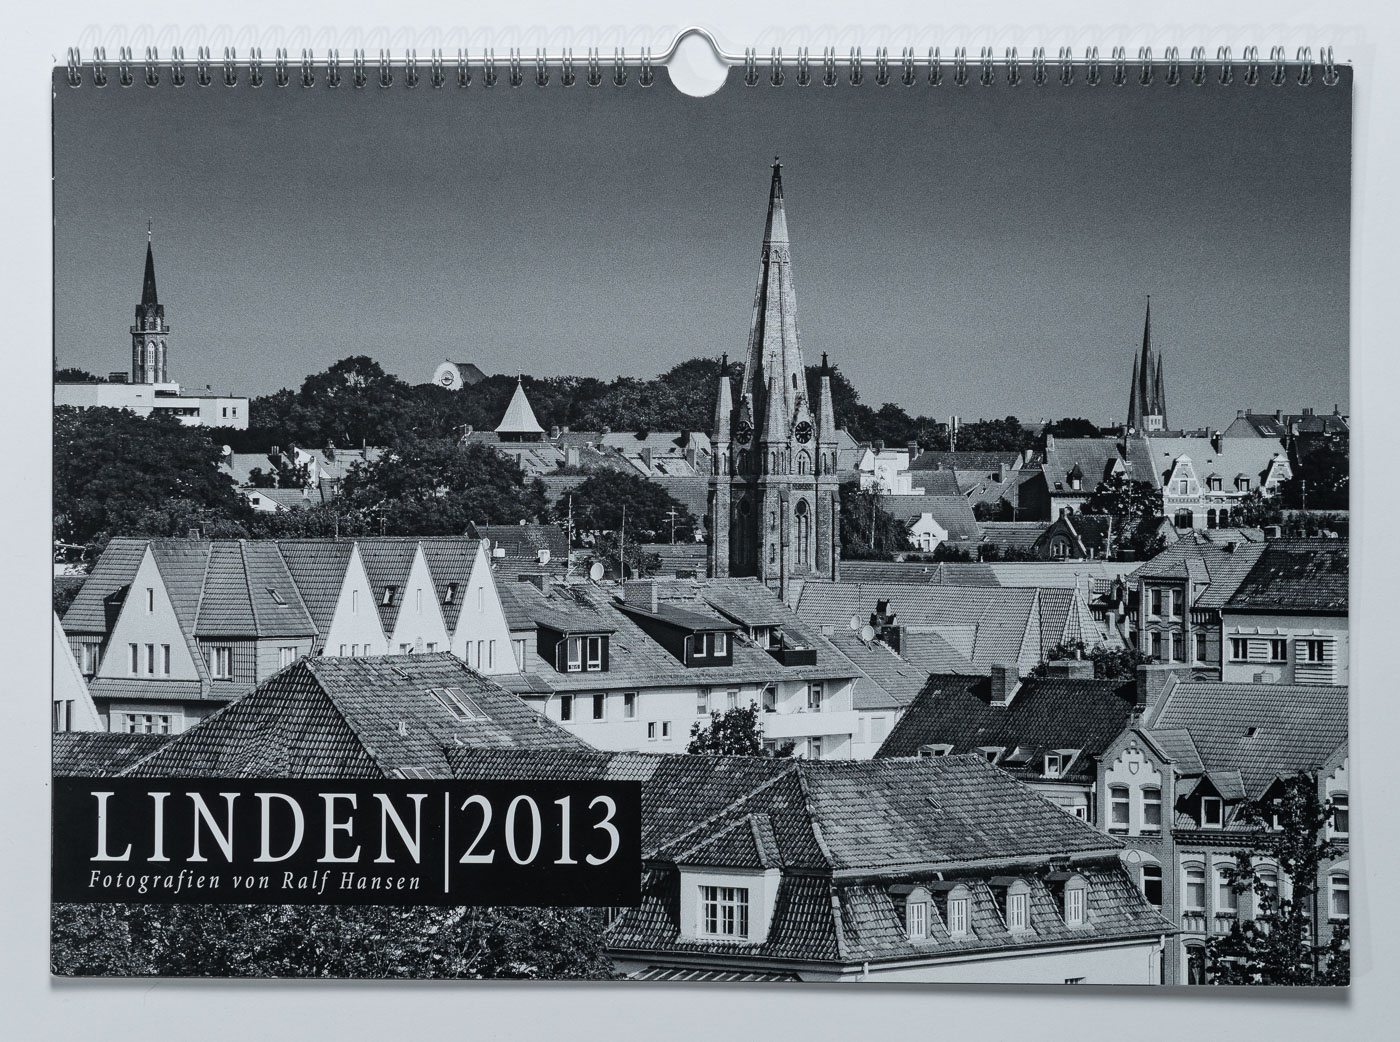 Lindenkalender LINDEN 2013